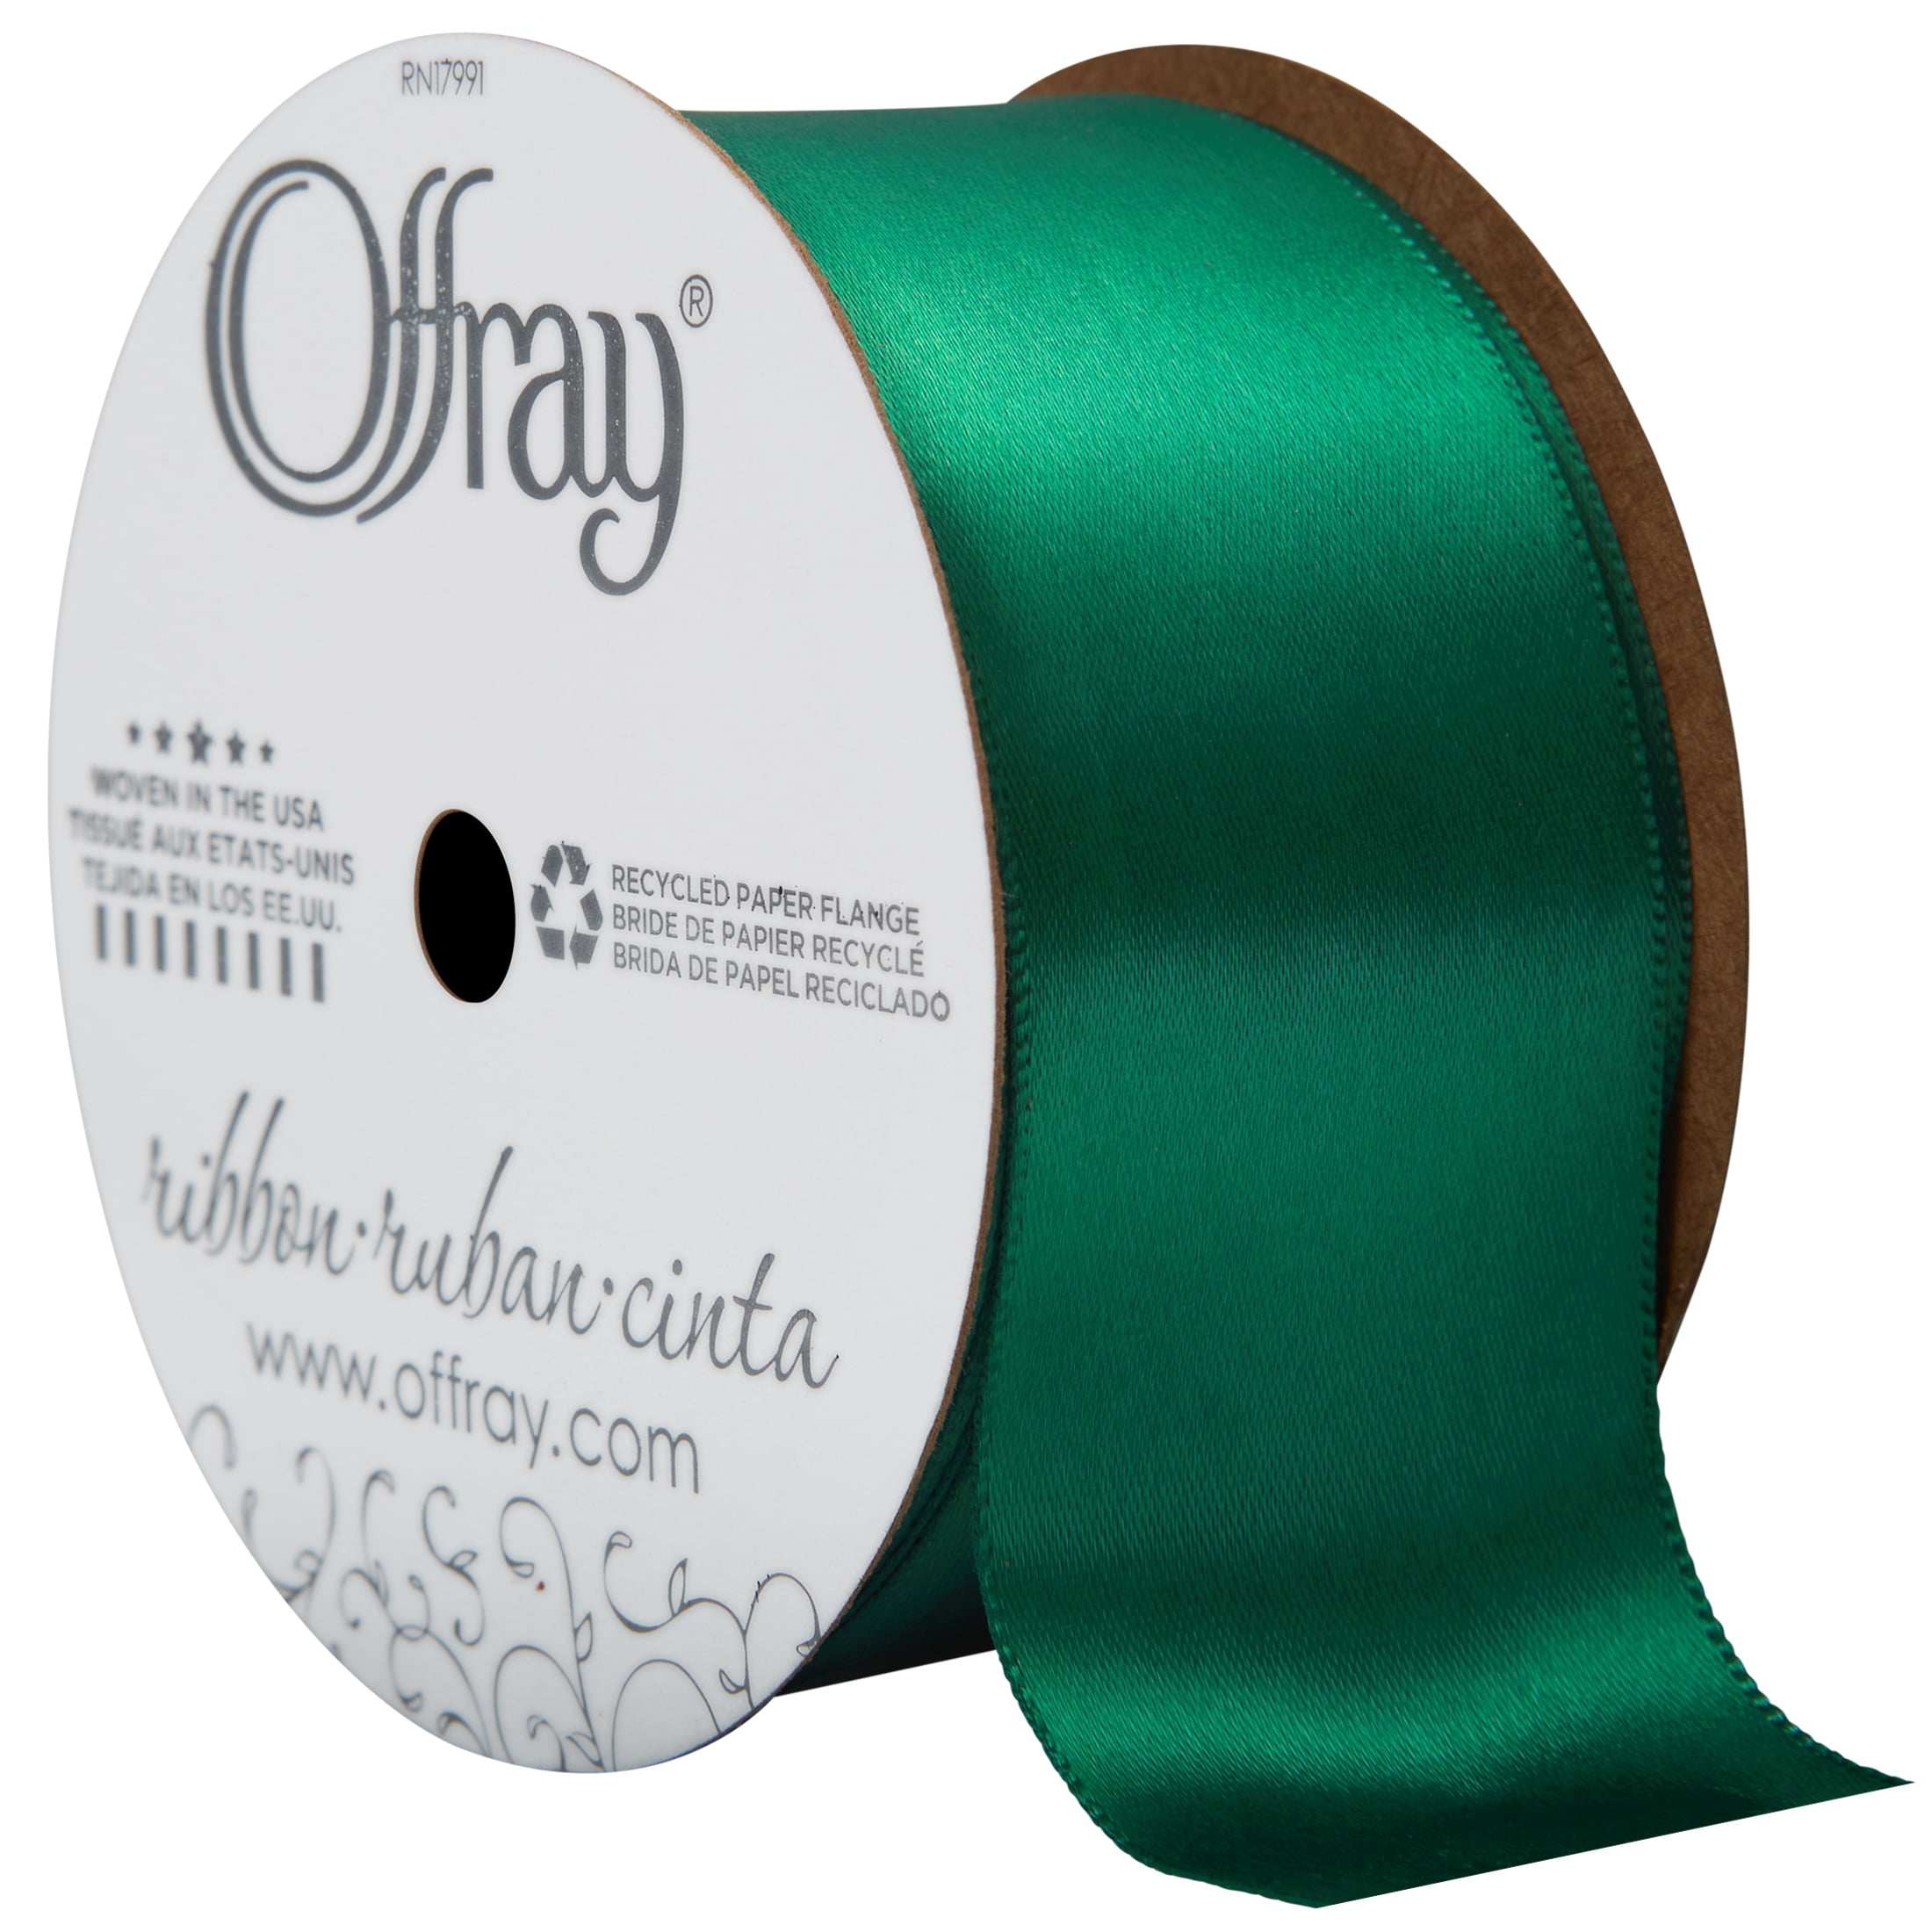 Prym 1-1/2 inch Satin Ribbon, Green, 3 YD